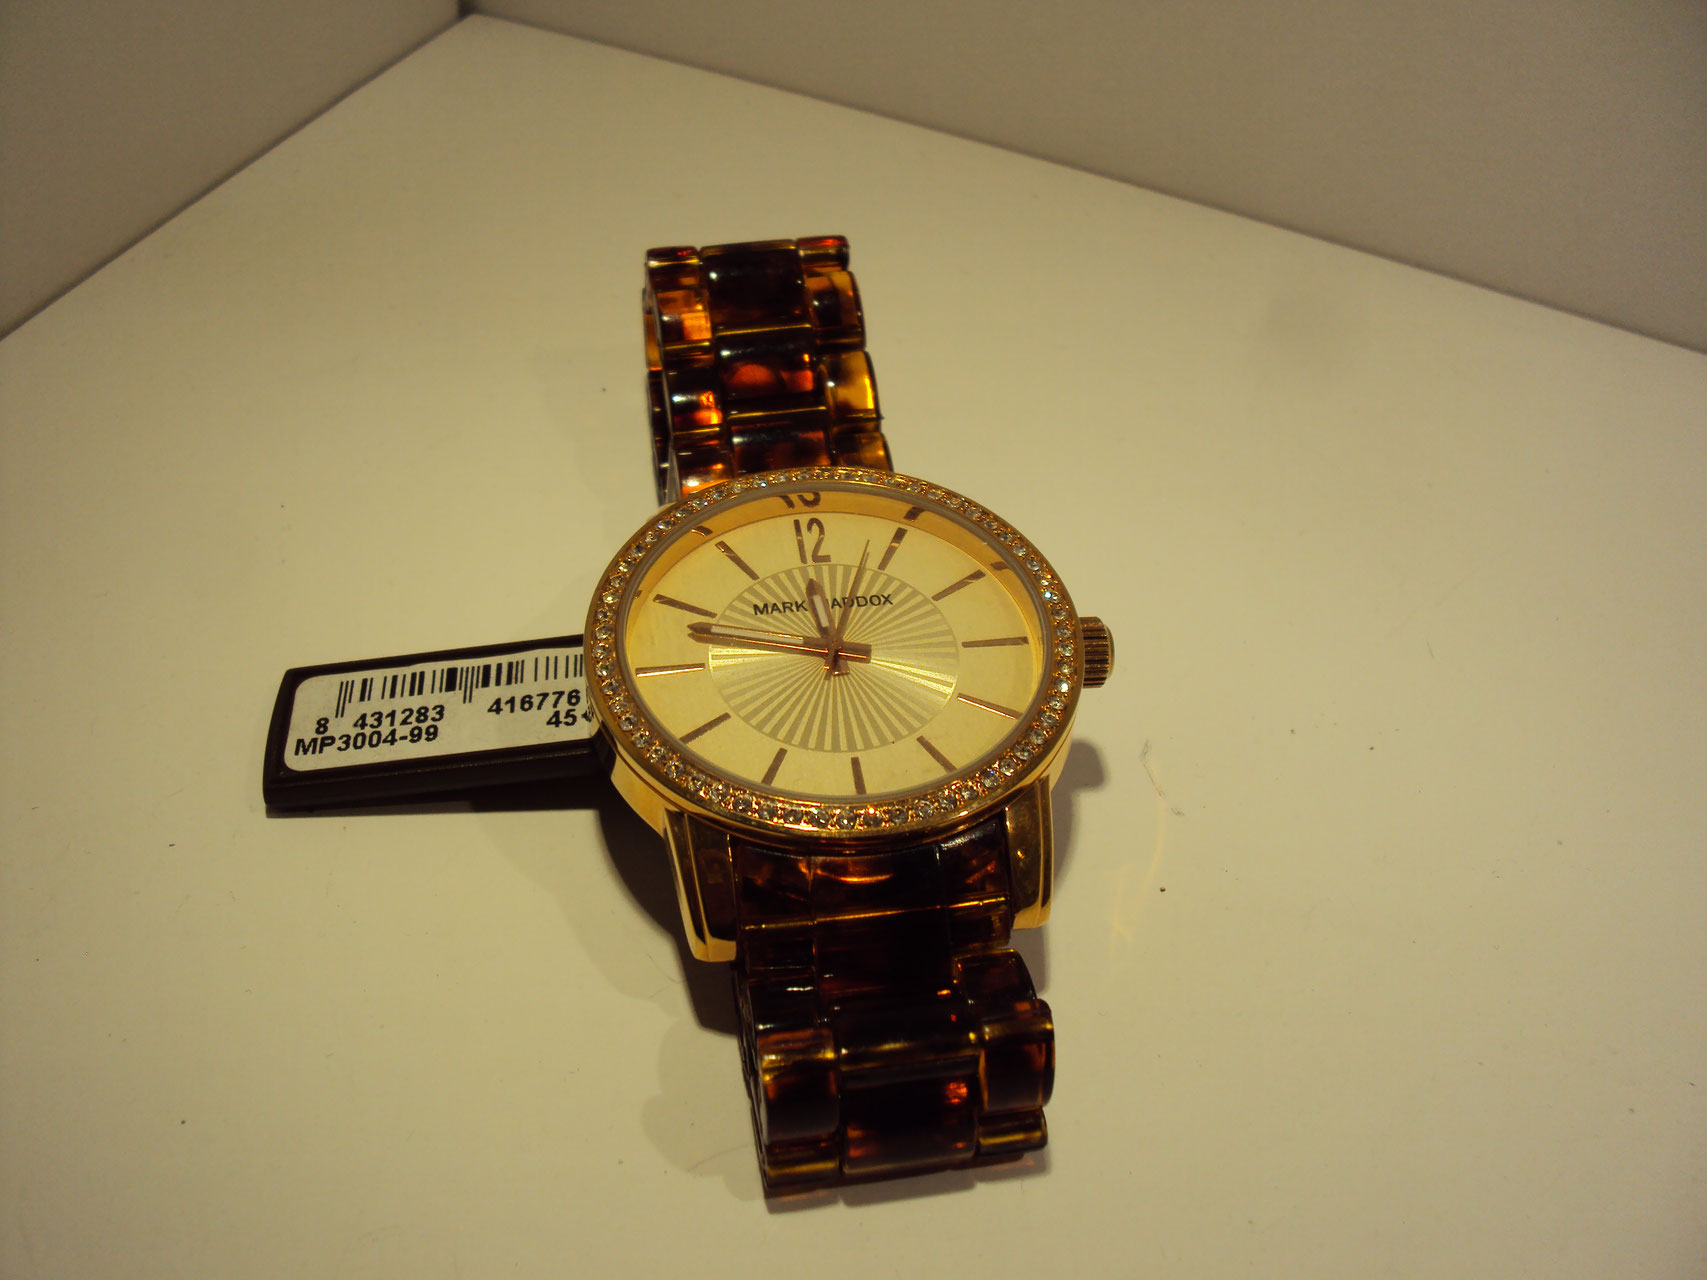 Reloj cobrizo con correa imitación a carey 45€